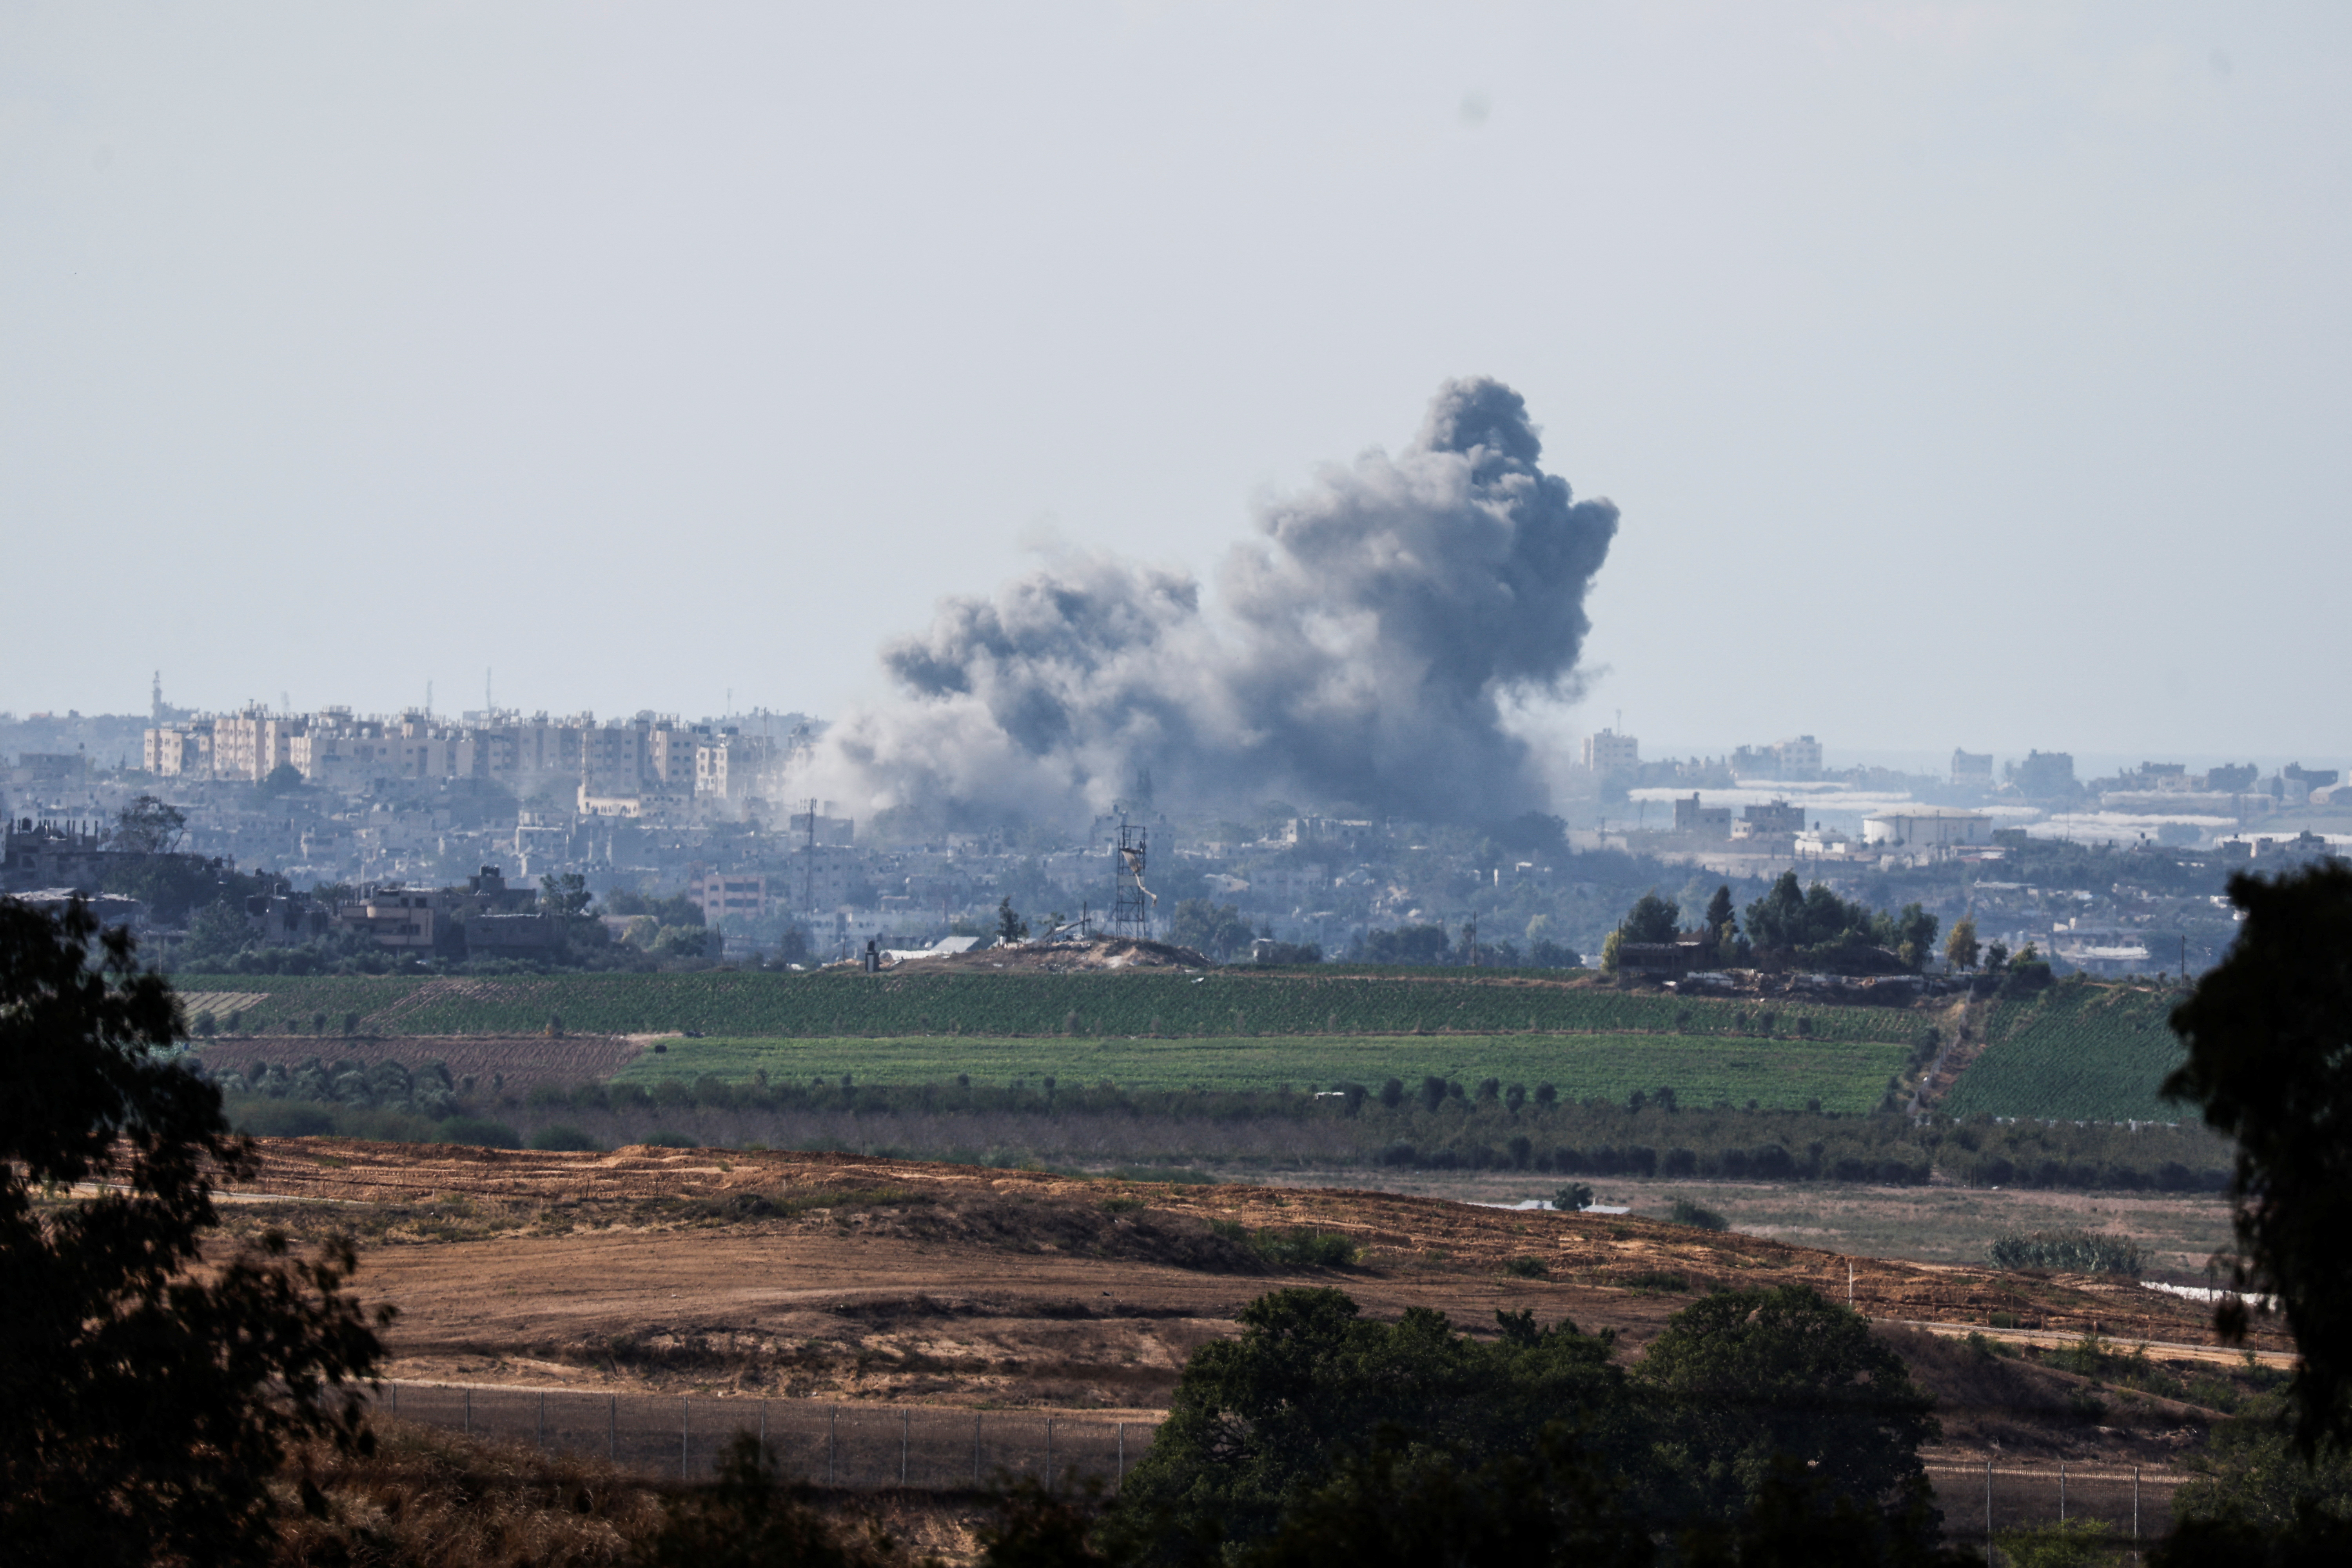 Smoke rises in the air following Israeli bombings in Gaza